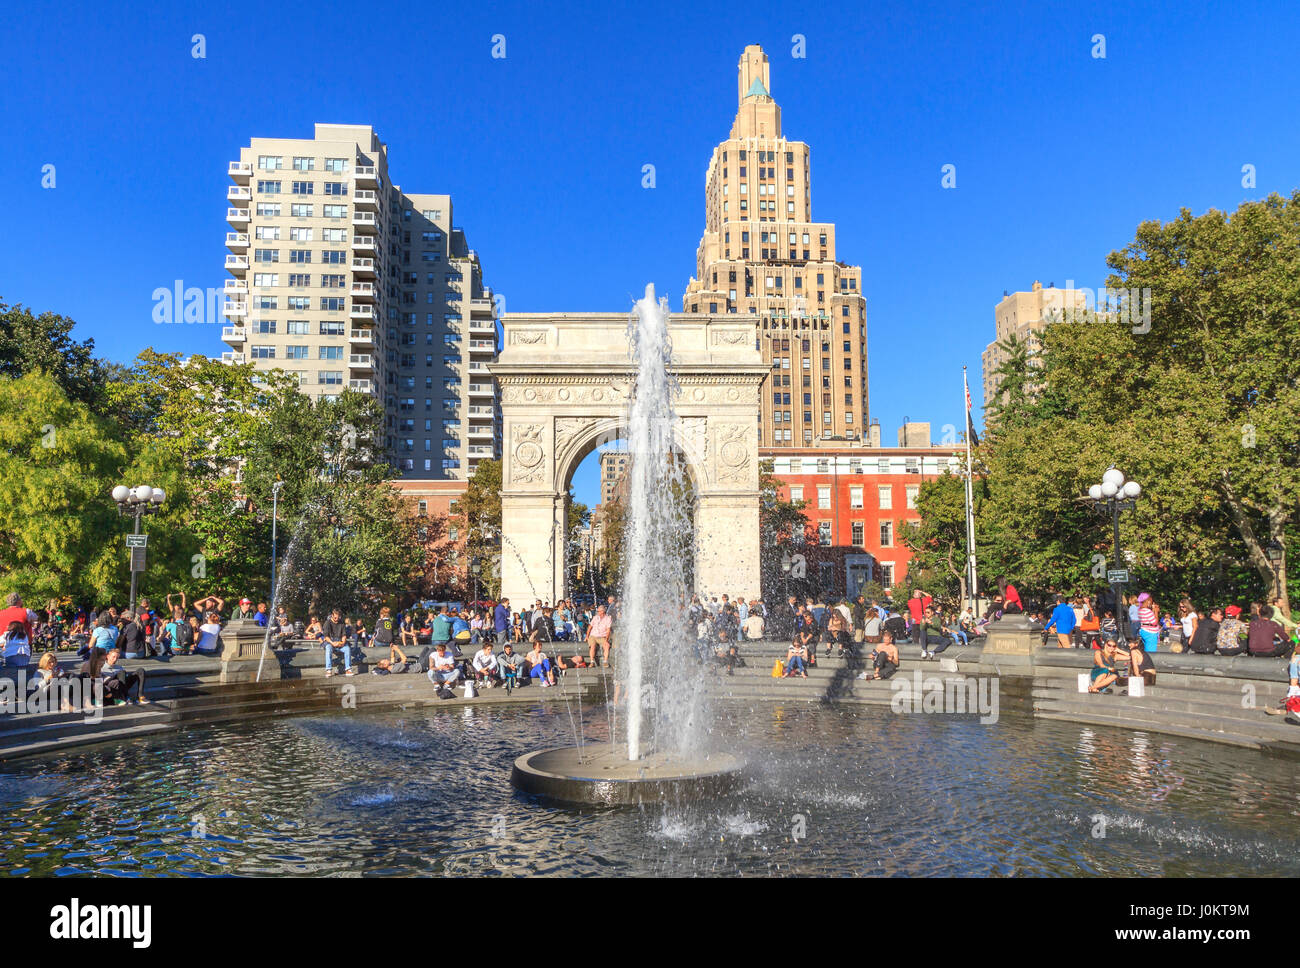 Fontaine, fontaine centrale, à l'arrière de triomphe de Washington Square Arch, Washington Square Park, Manhattan, New York City Banque D'Images